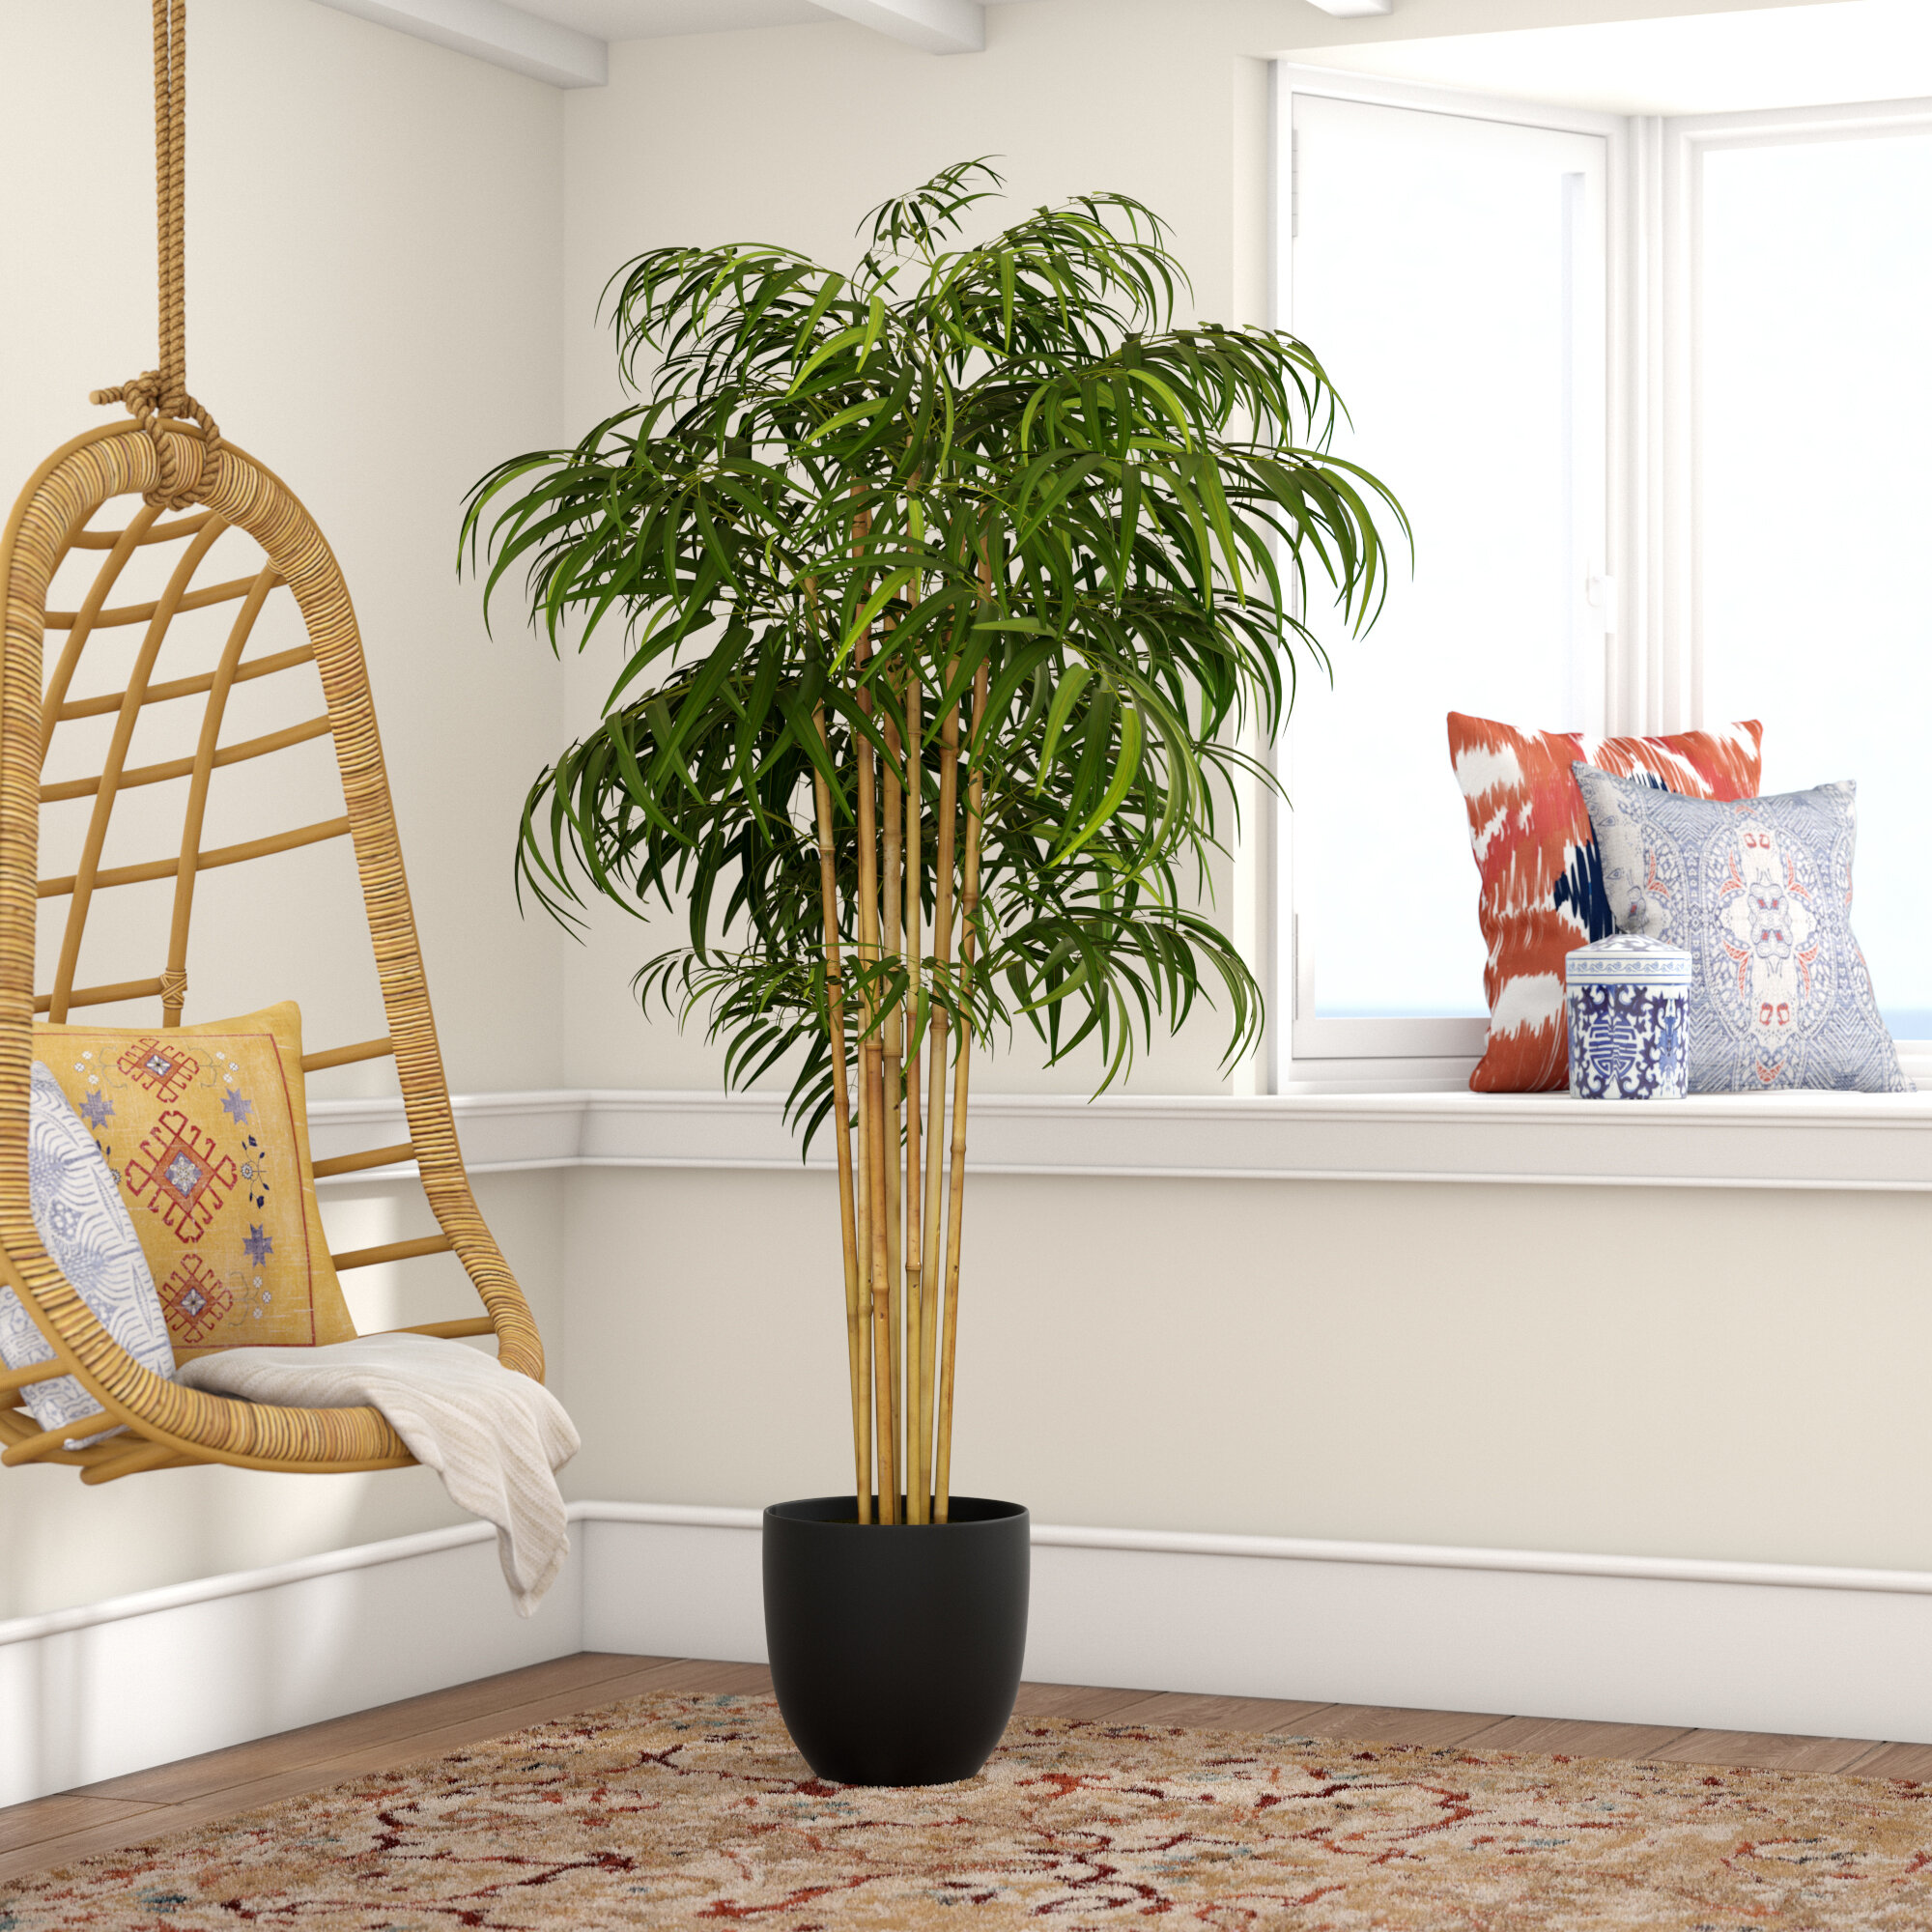 Bloomsbury Market Artificial Floor Bamboo Tree In Pot Reviews